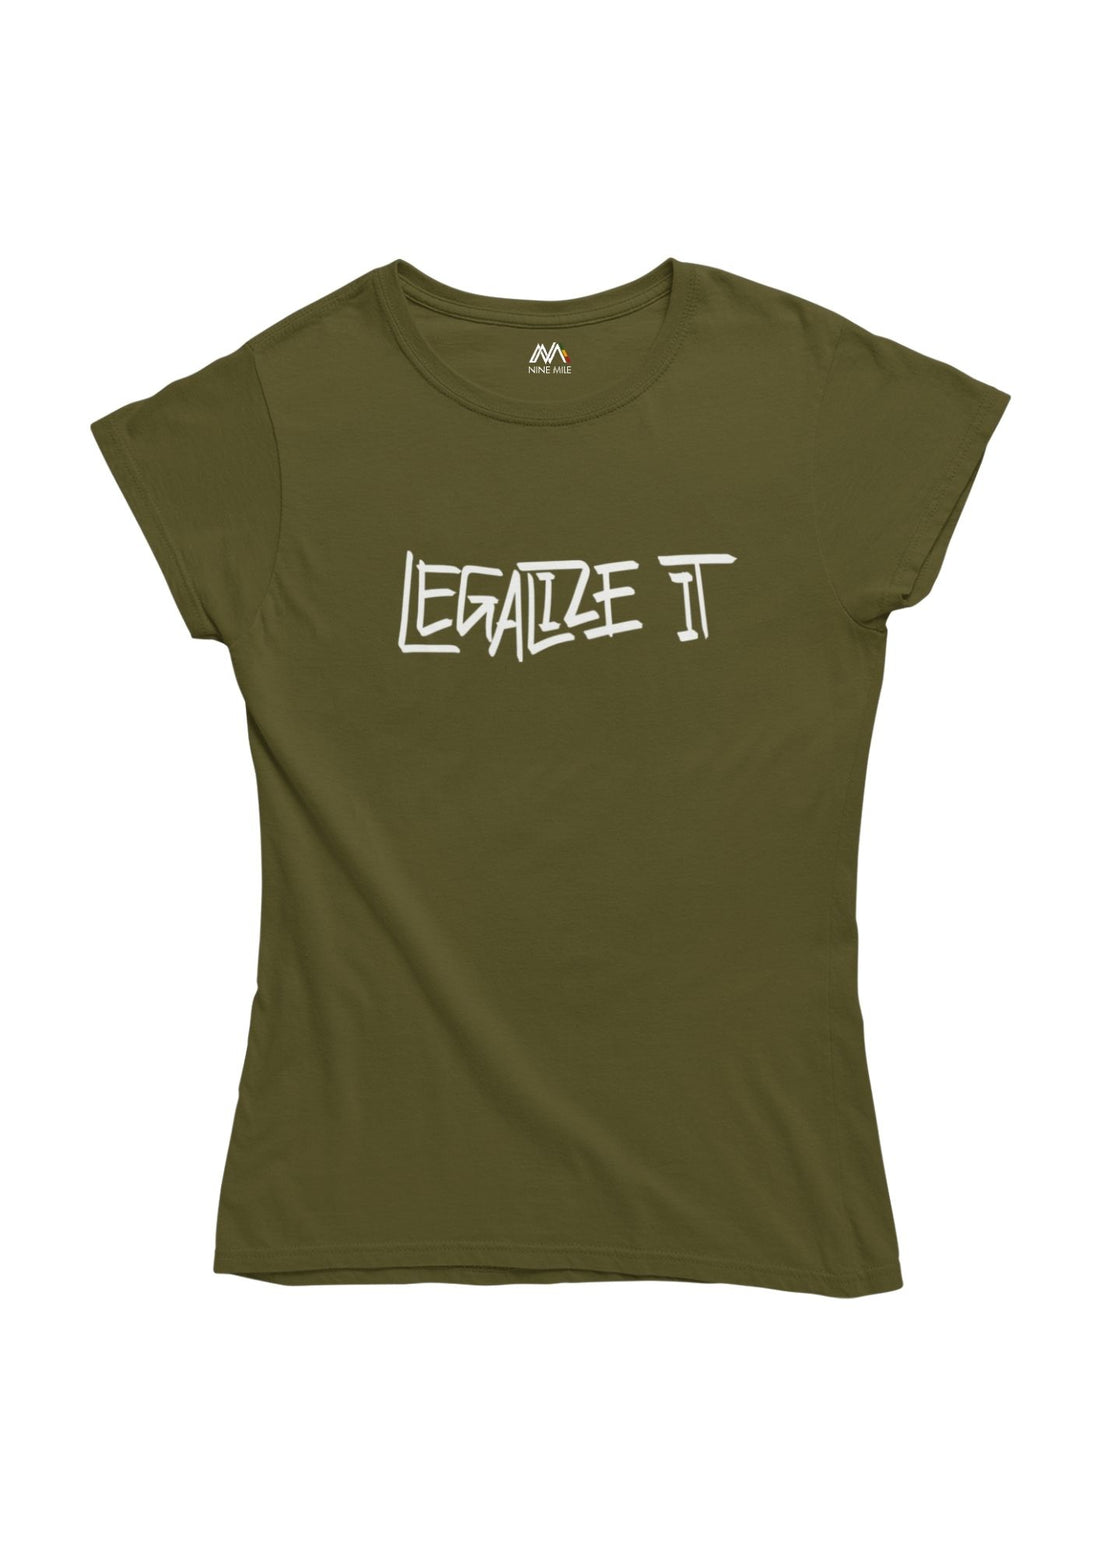 Nine Mile Legalize It T-Shirt - Nine Mile Clothing 